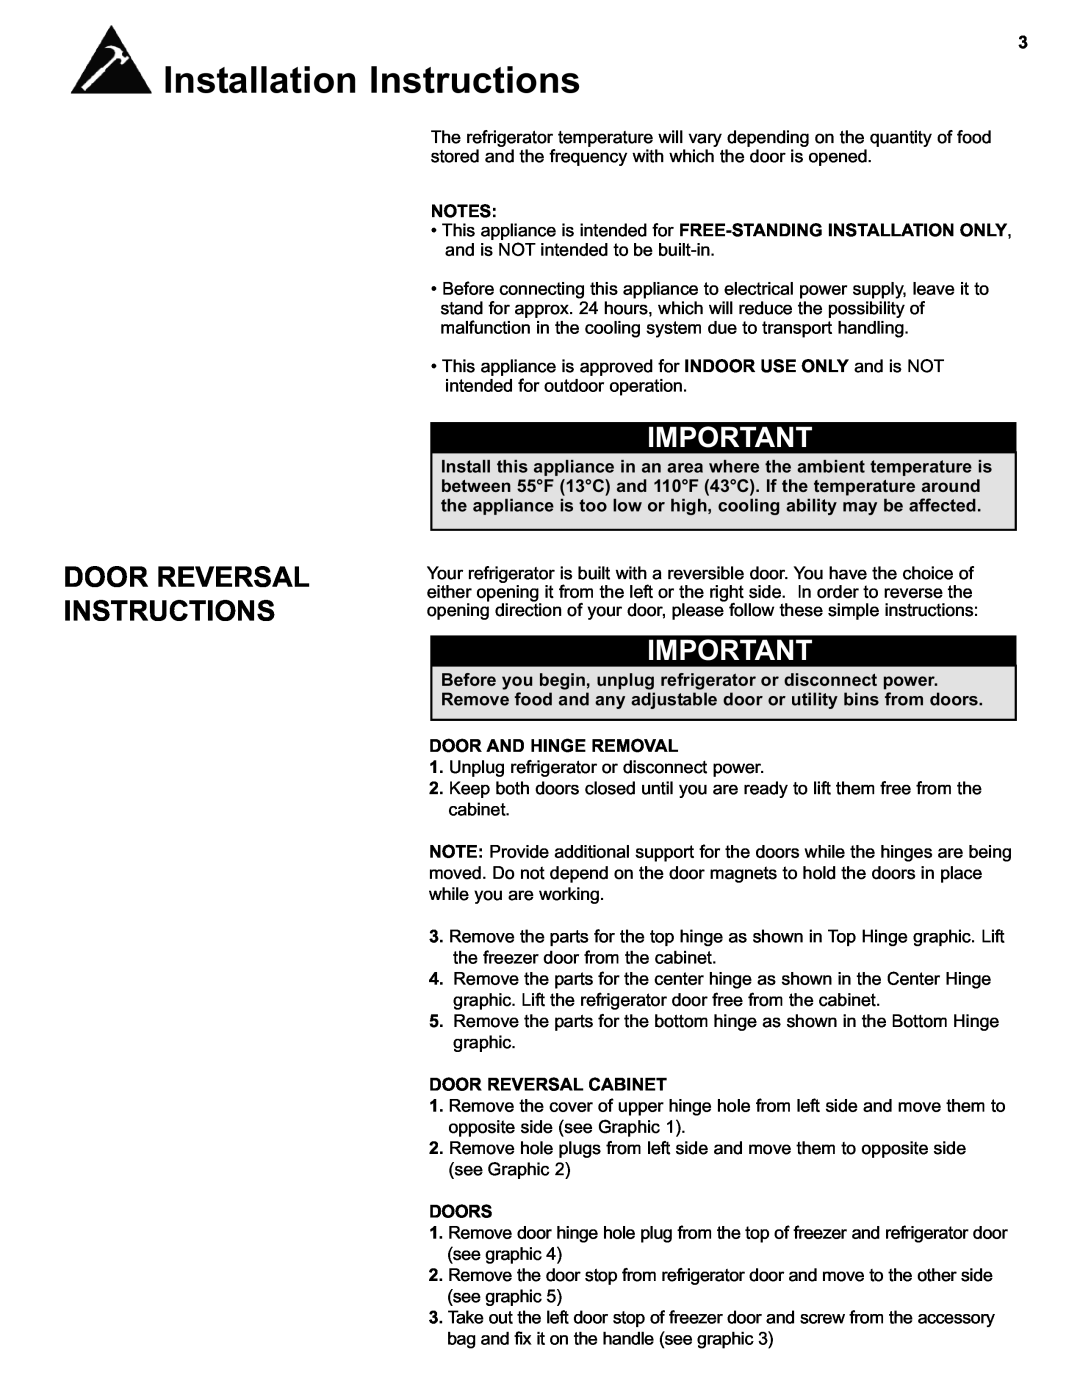 Danby DFF280WDB manual Door Reversal Instructions, Door And Hinge Removal, Door Reversal Cabinet, Doors 